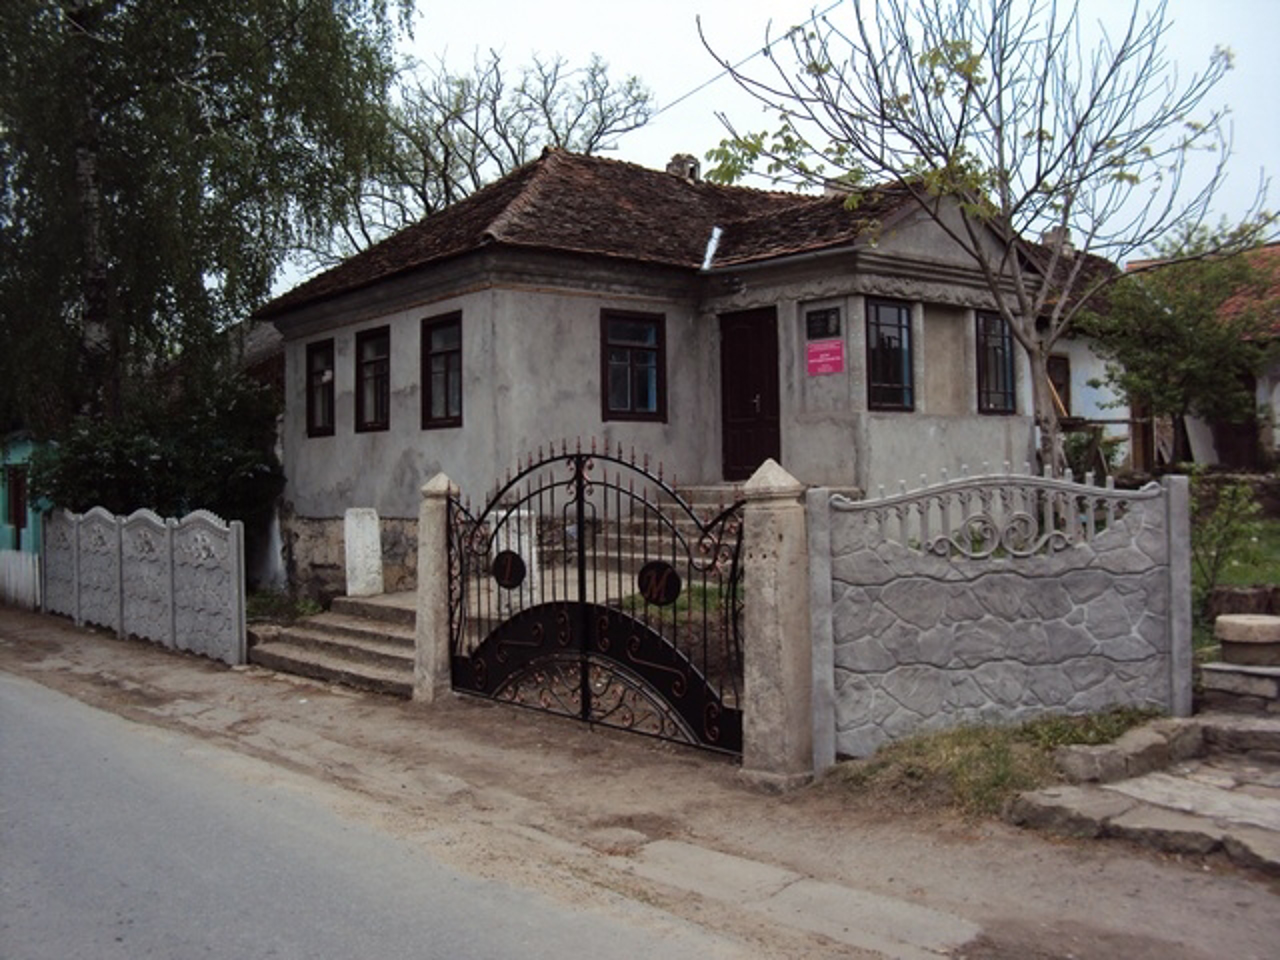 Ihnatsiy Stsybor-Markhotsky Memorial Museum, Mynkivtsi